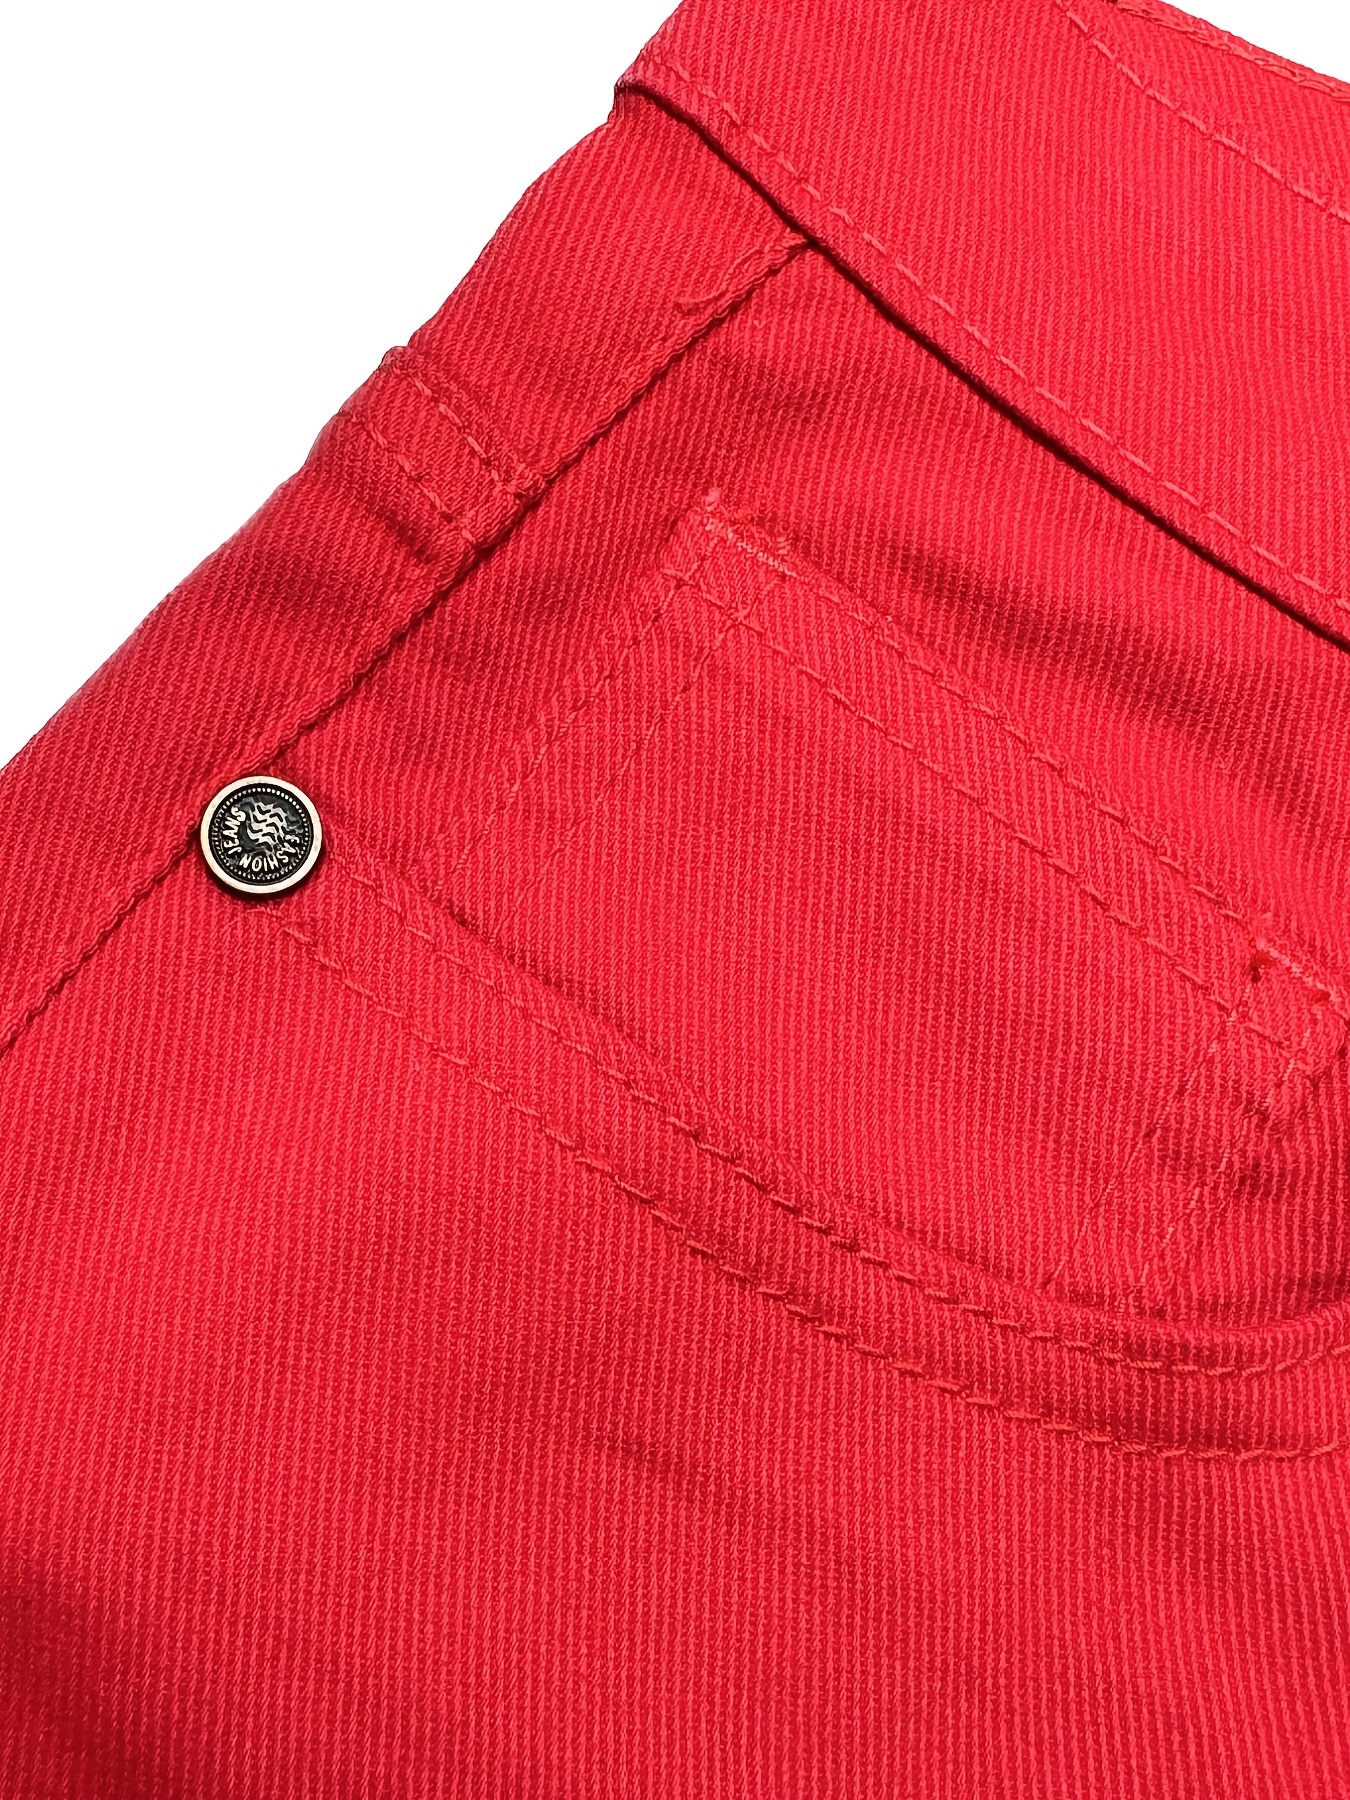 Nuevos Pantalones Vaqueros Rojos Hombre Pantalones Elásticos